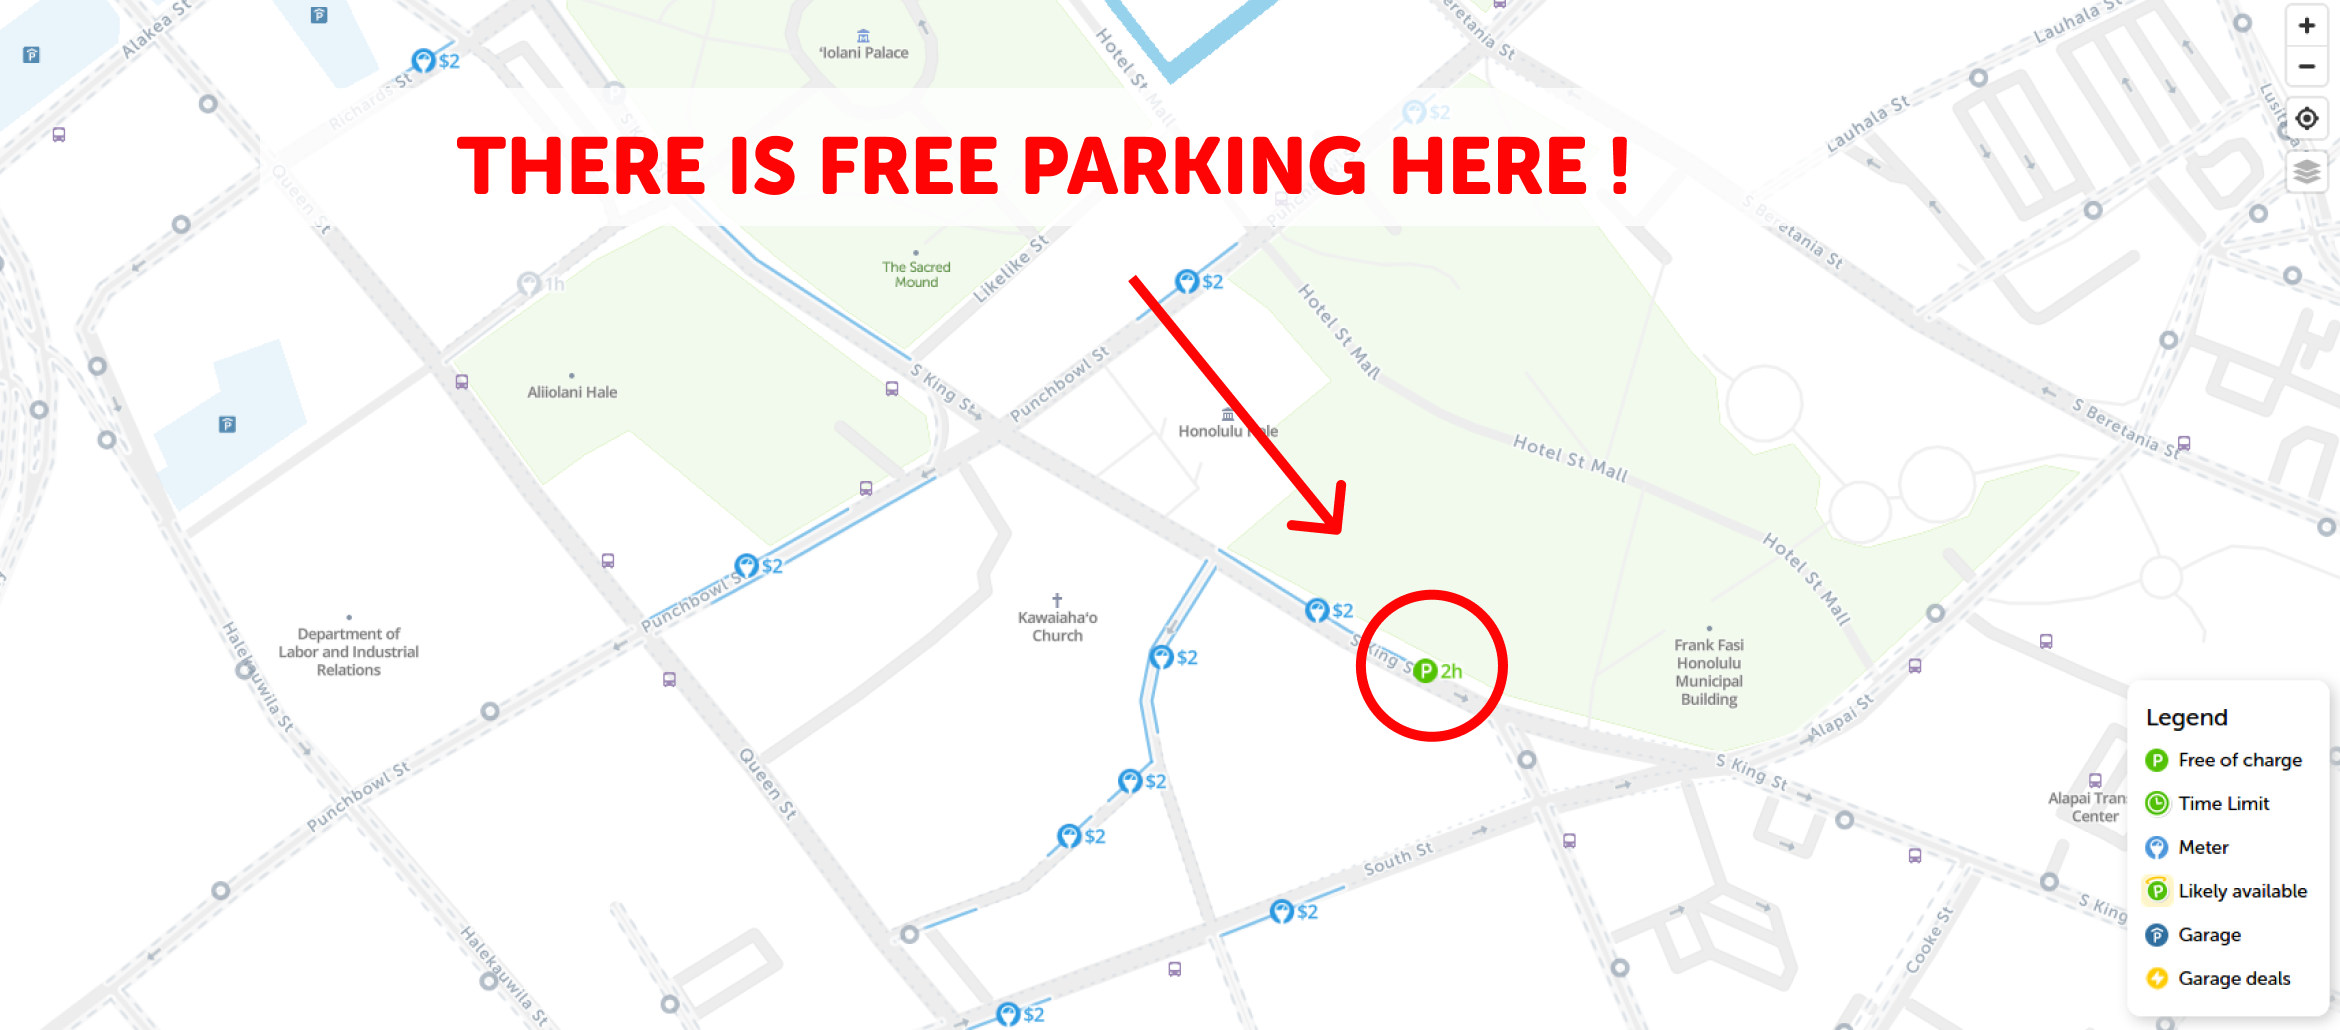 map of free parking in Honolulu - SpotAngels